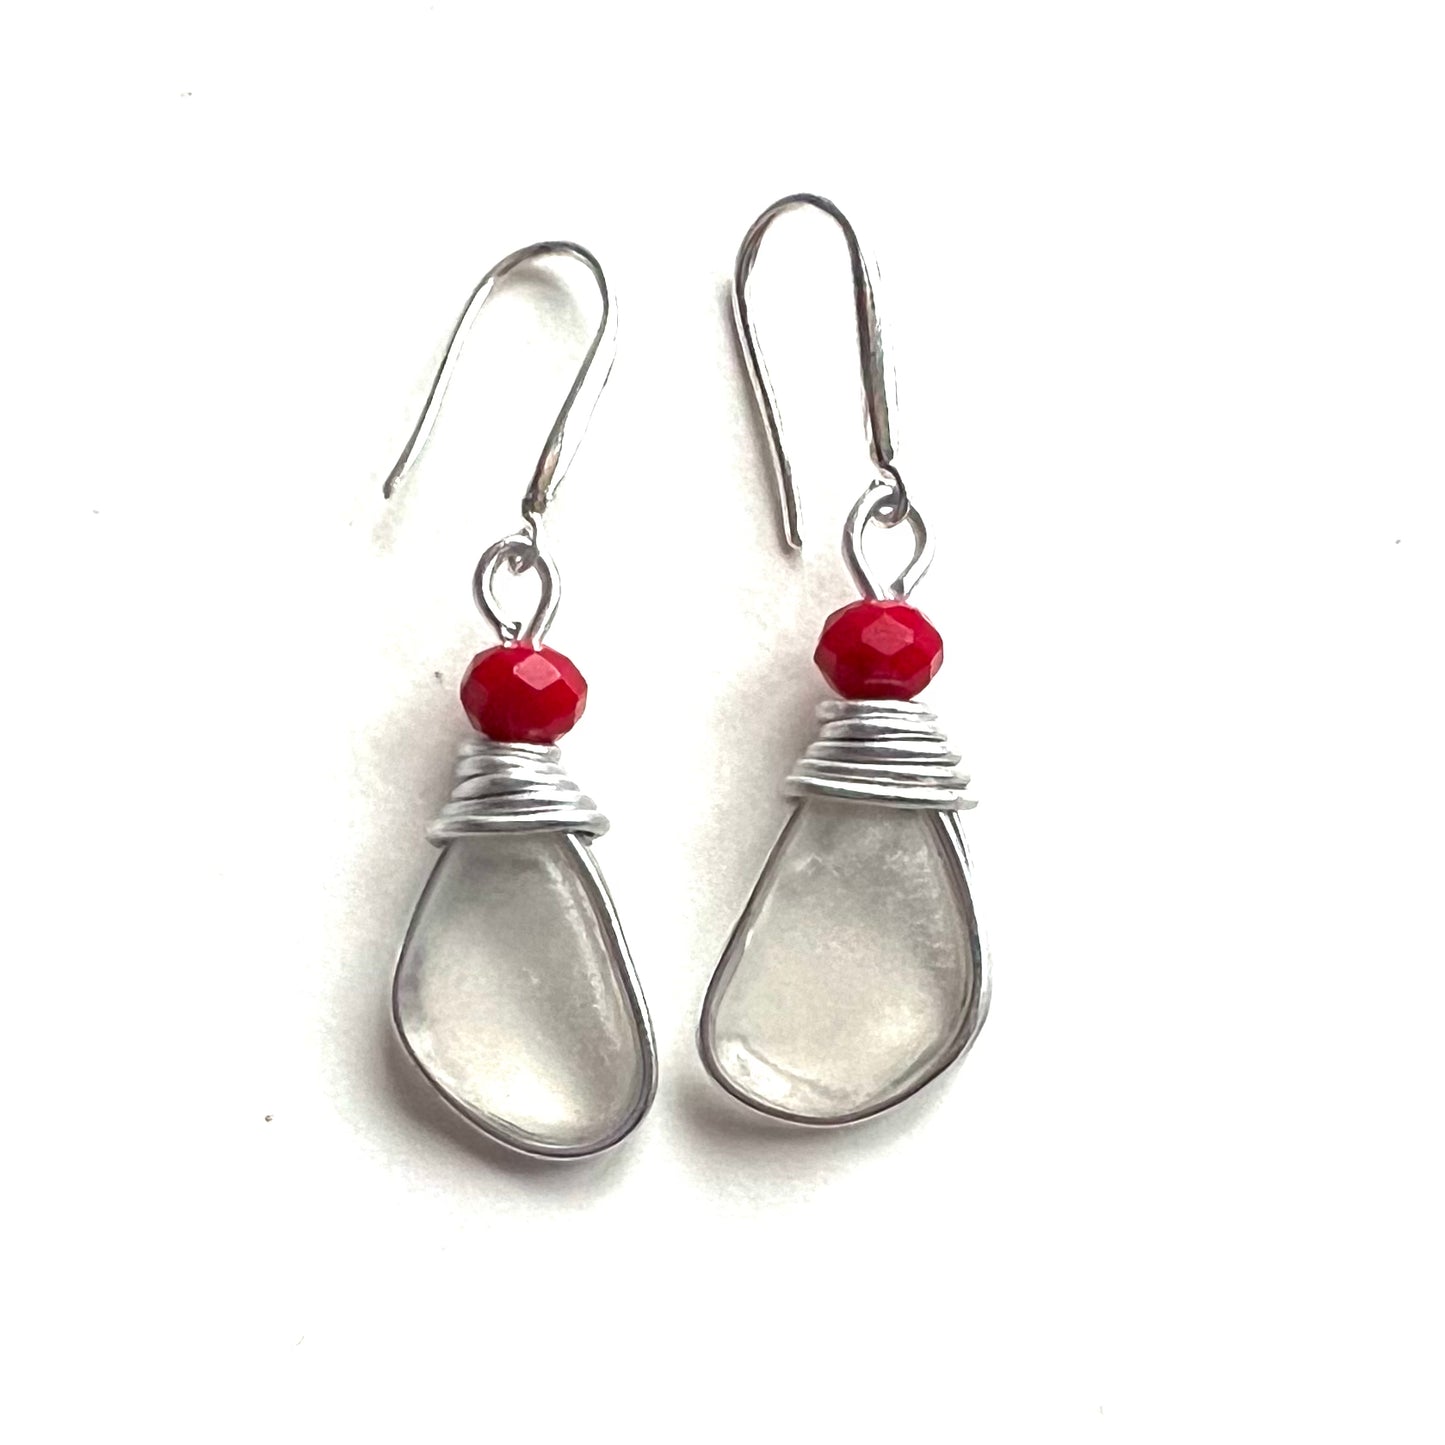 Devon Sea Glass & Berry Earrings